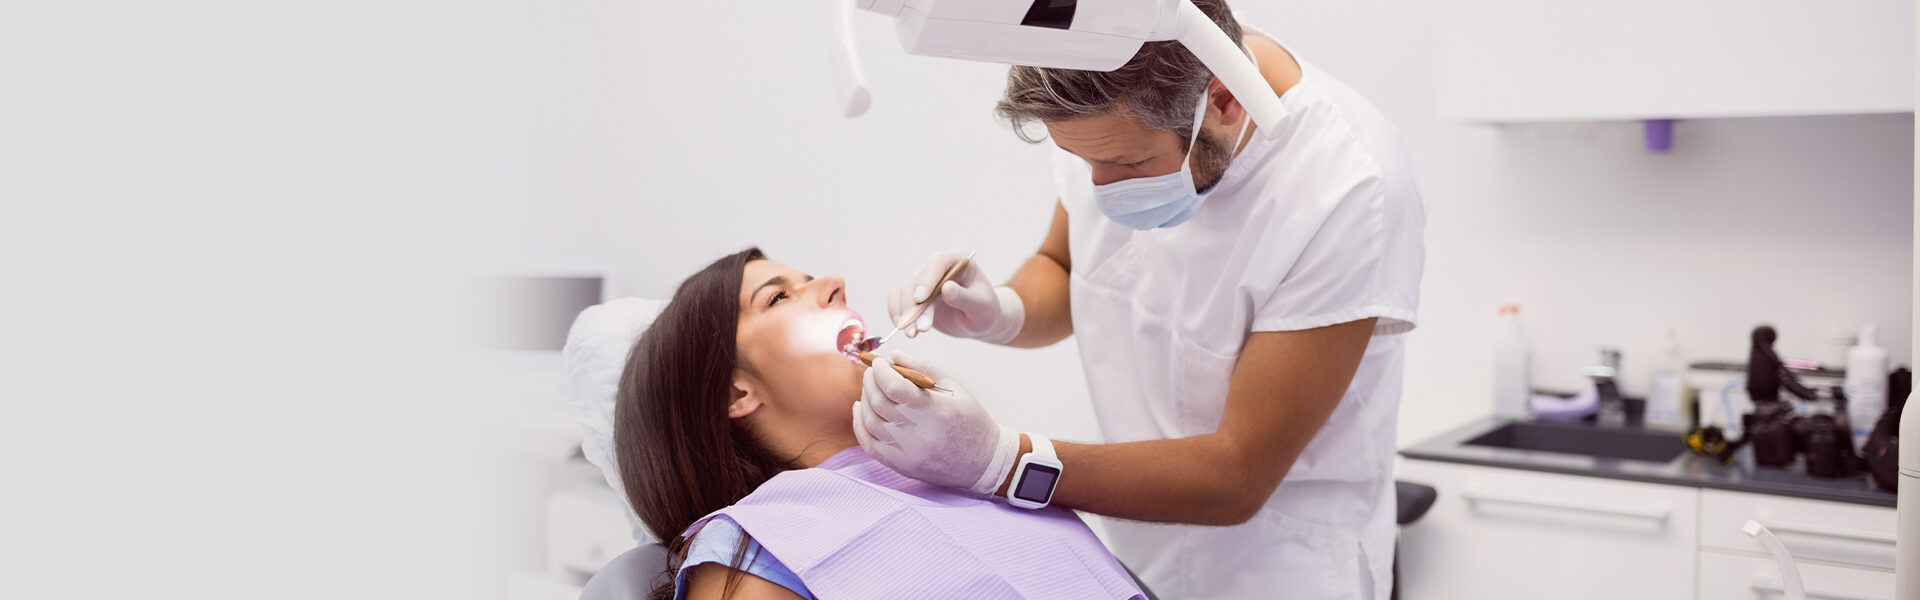 Dental Exams & Cleanings in Milford, CT